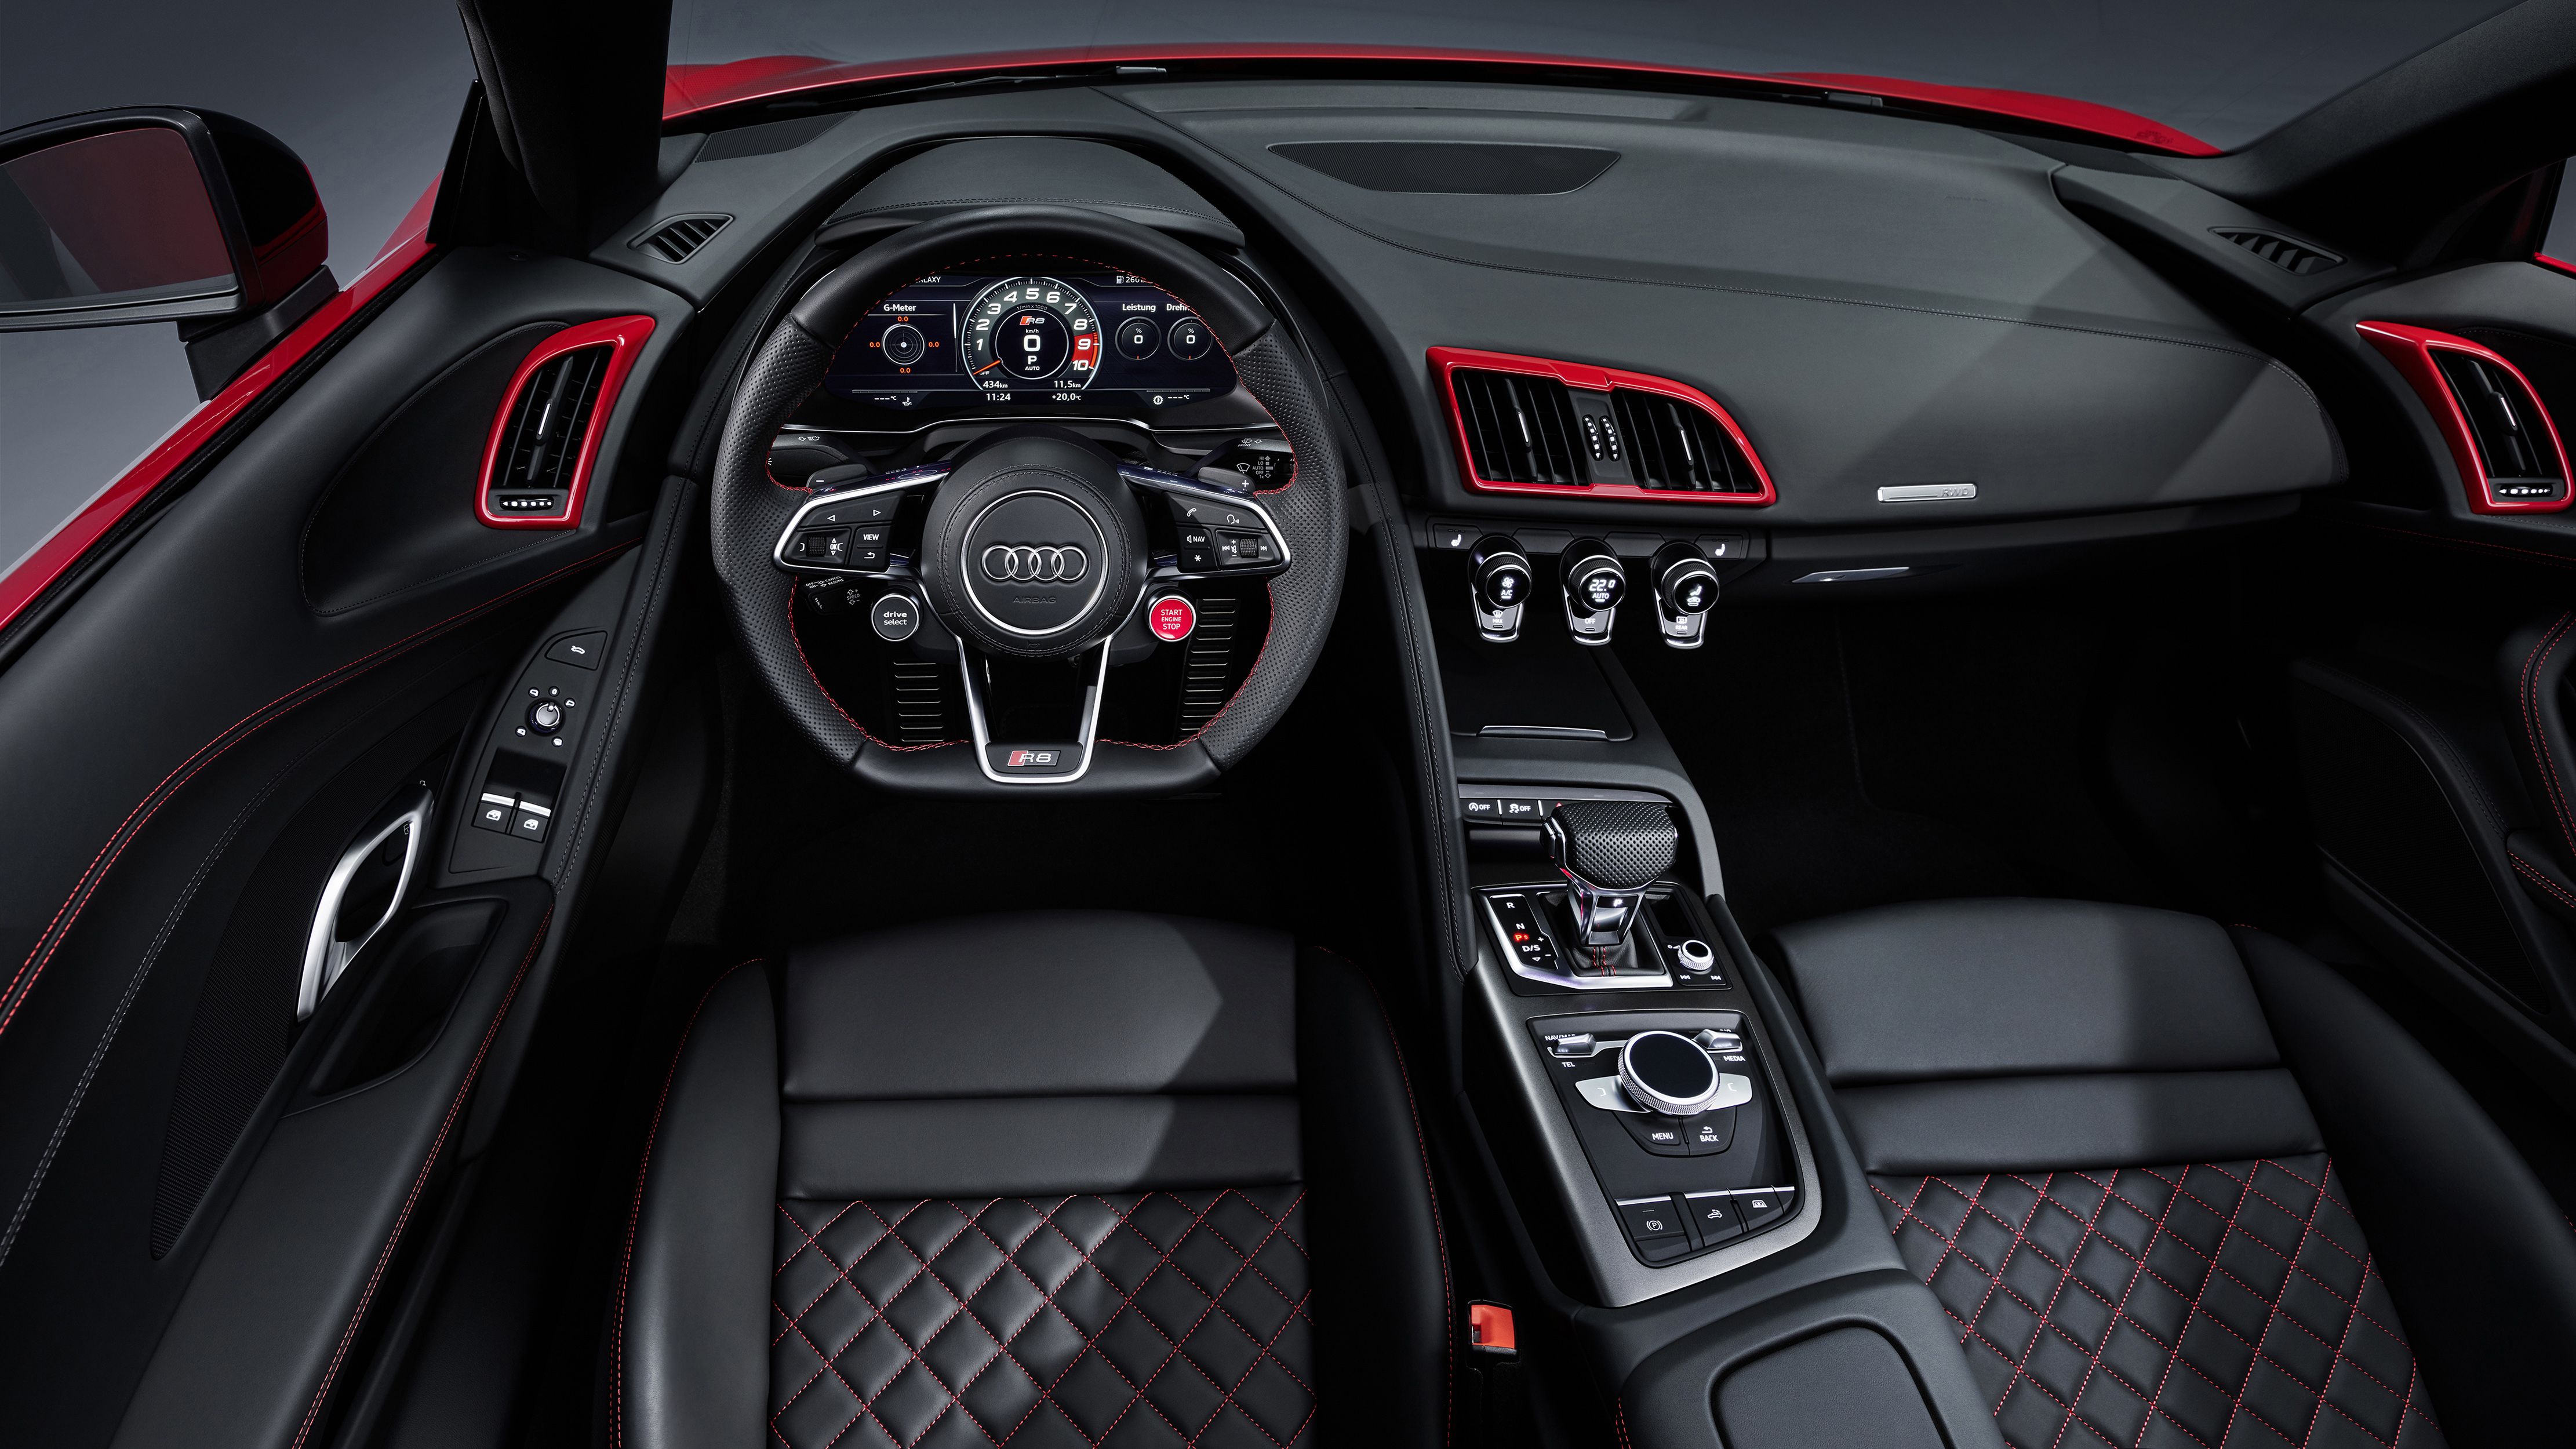 Audi R8 V10 RWD Spyder 2019 4K Interior Wallpaper. HD Car